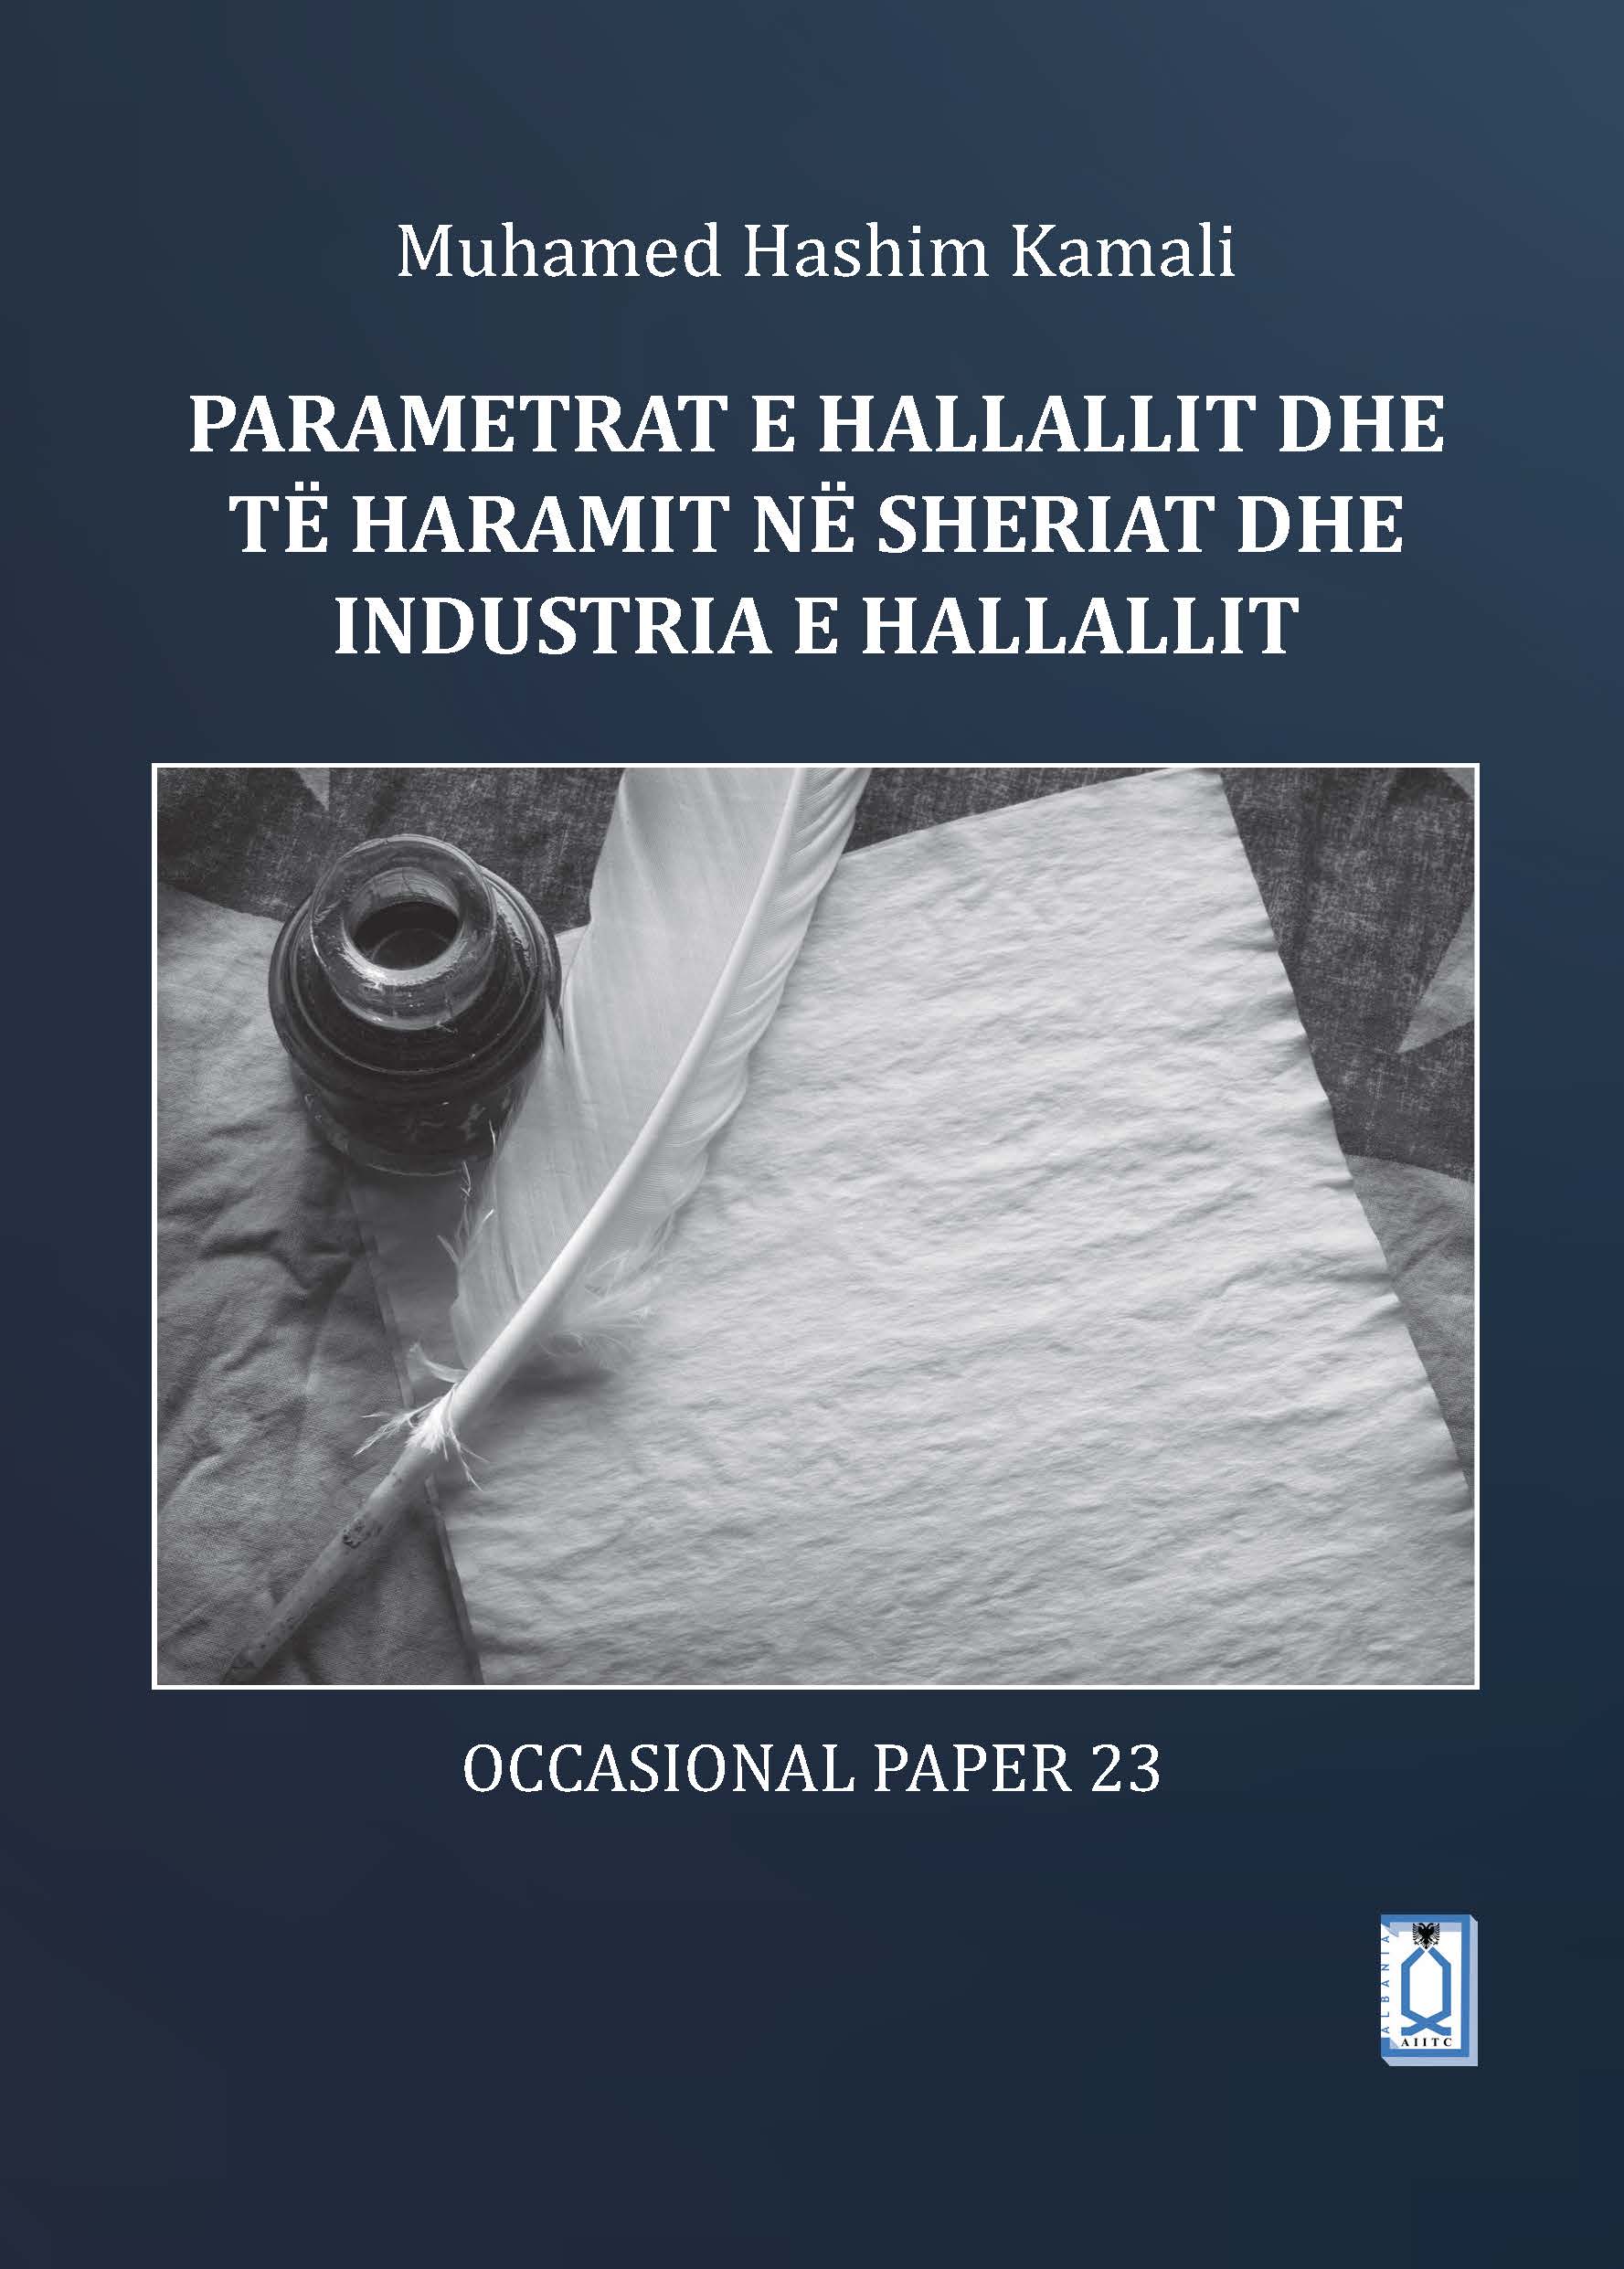 Albanian: Parametrat e hallallit dhe të haramit në Sheriat dhe industria e hallallit (The Parameters of Halal and Haram in Shariah and the Halal Industry)